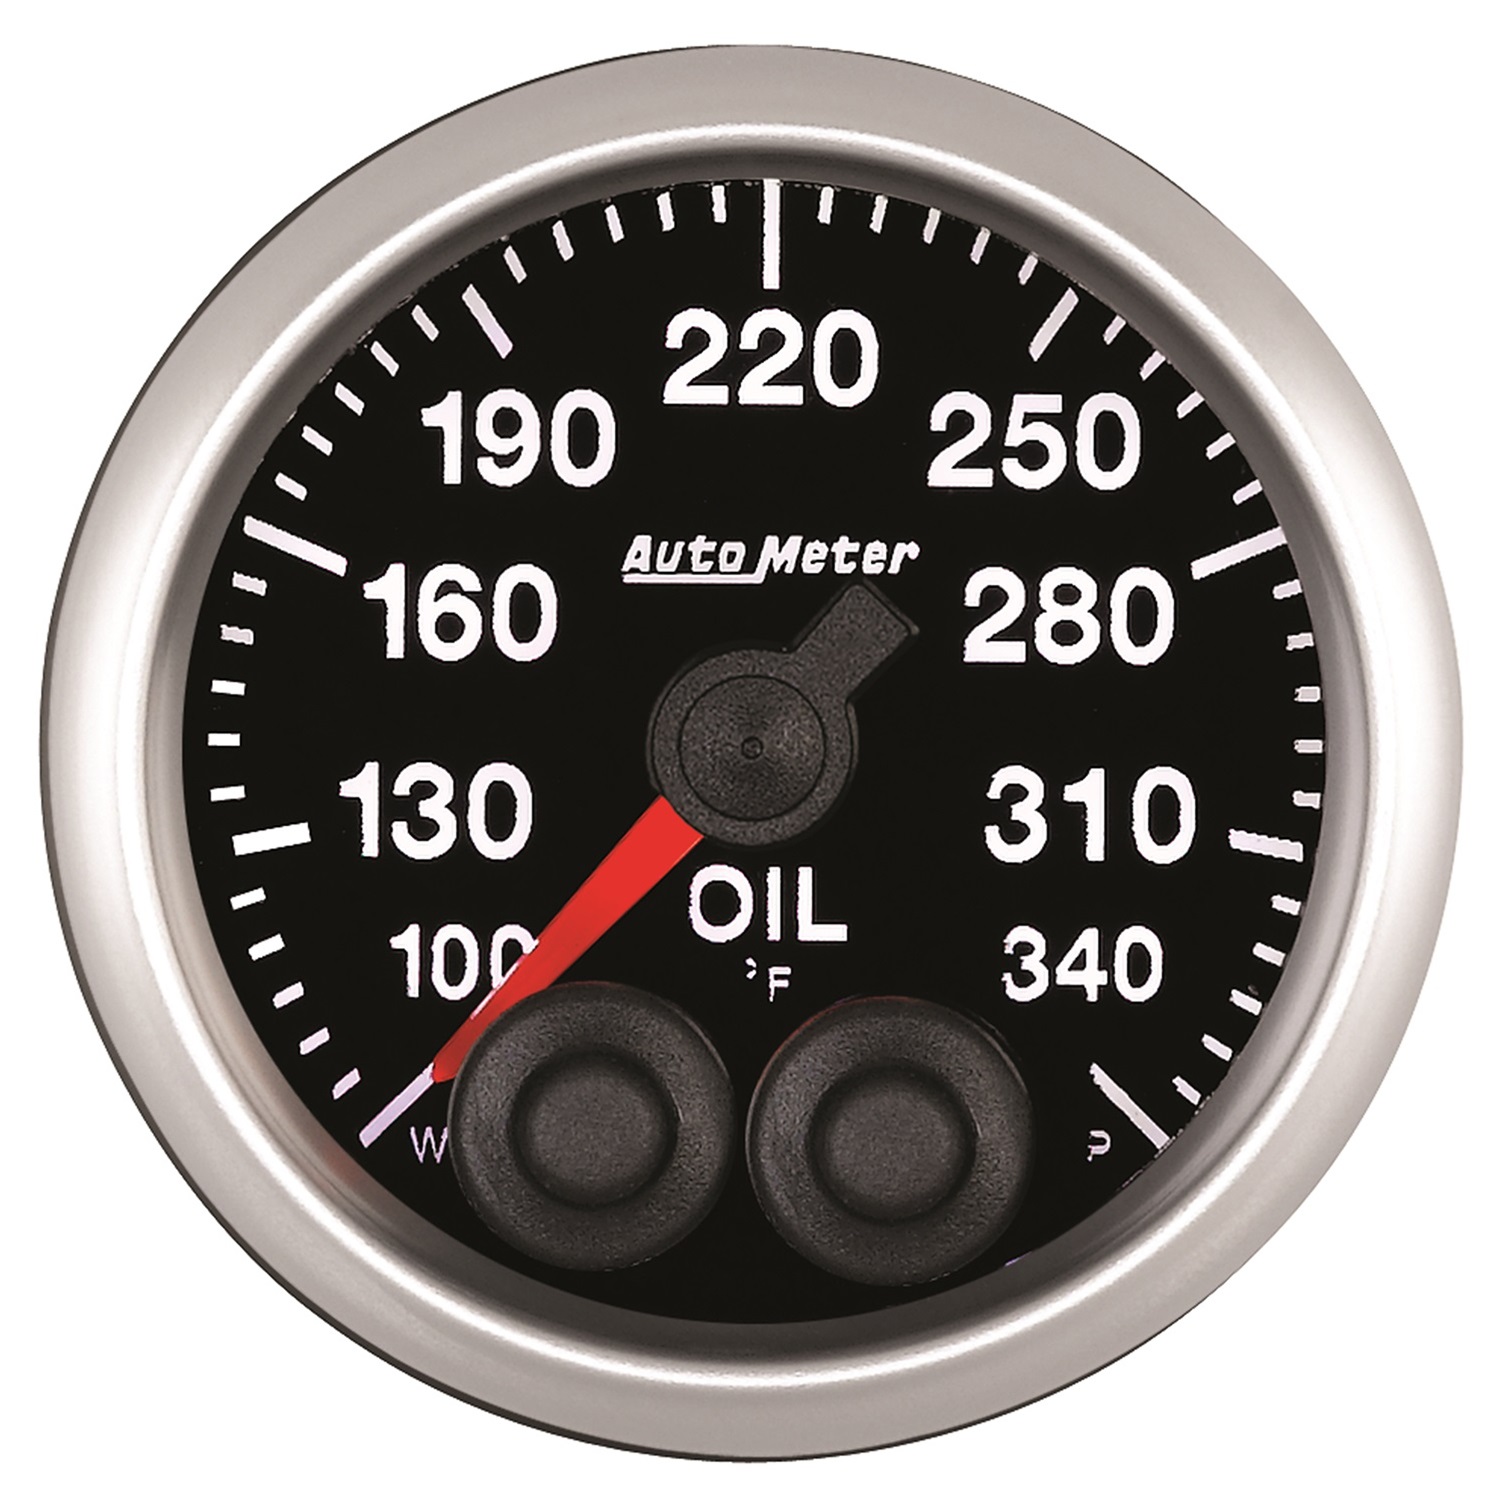 Auto Meter Auto Meter 5540 Competition Series; Oil Temperature Gauge